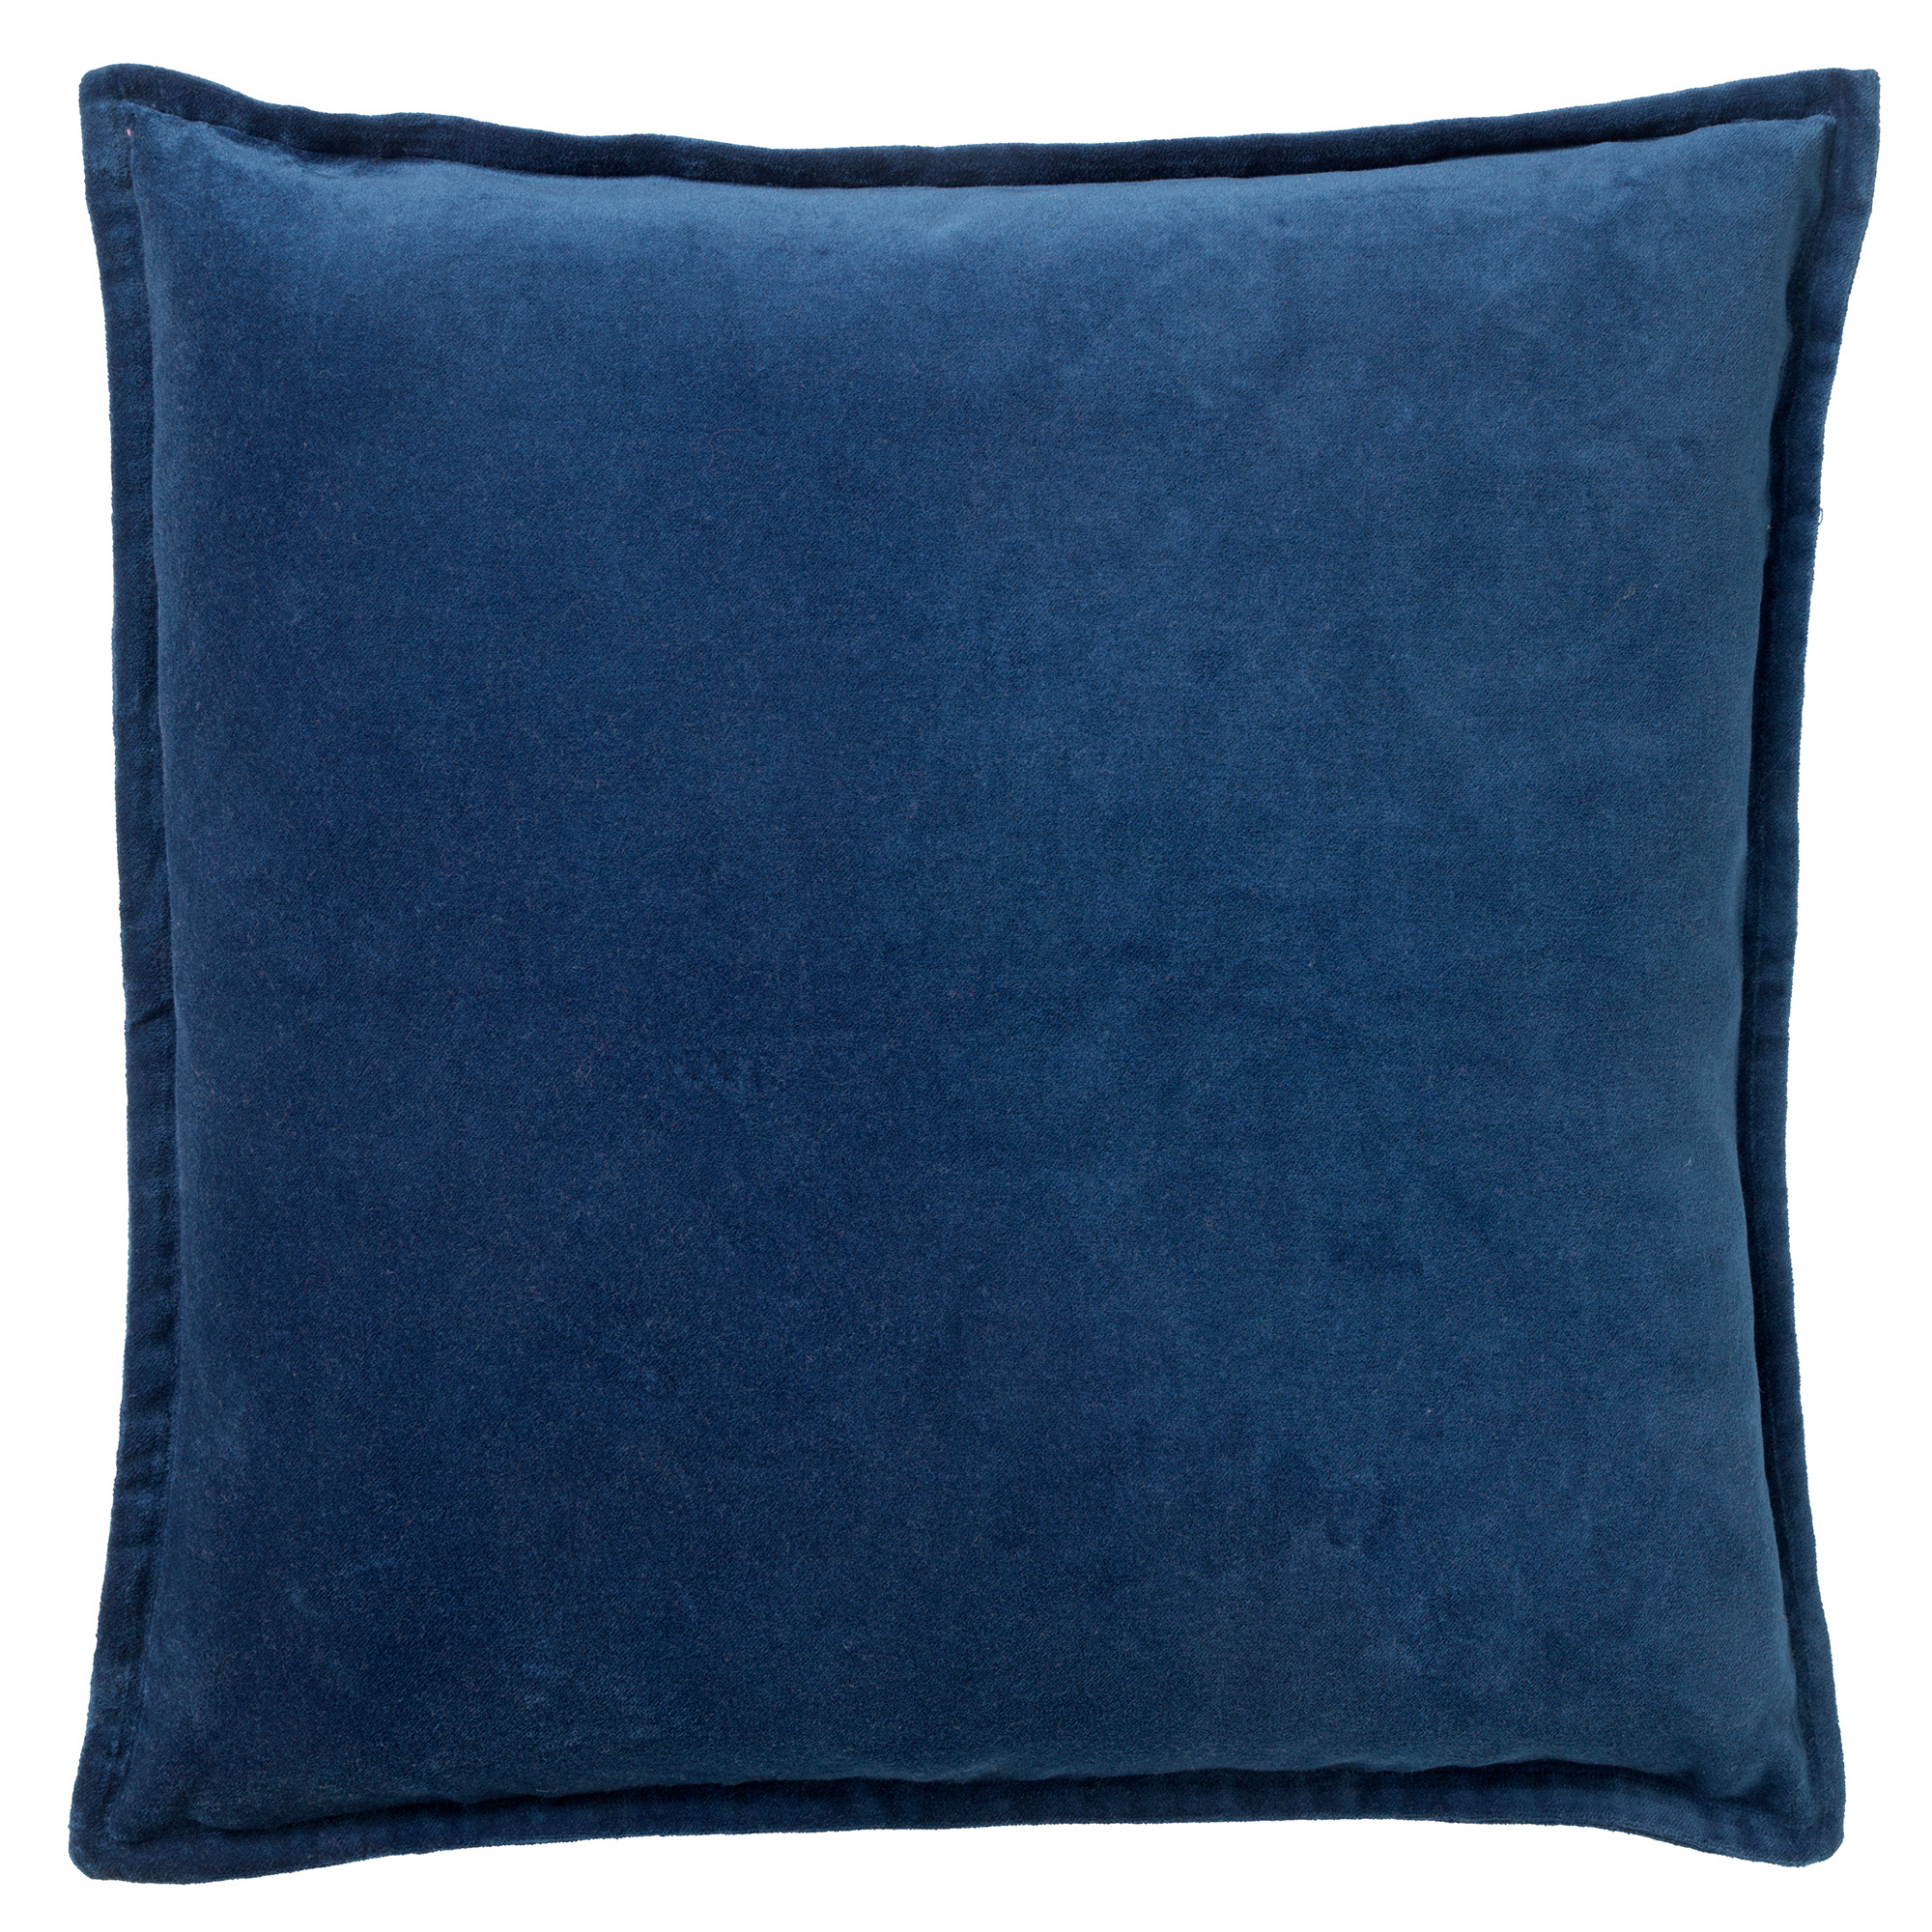 CAITH - Kussenhoes 50x50 cm - 100% katoen velvet - lekker zacht - Insignia Blue - donkerblauw